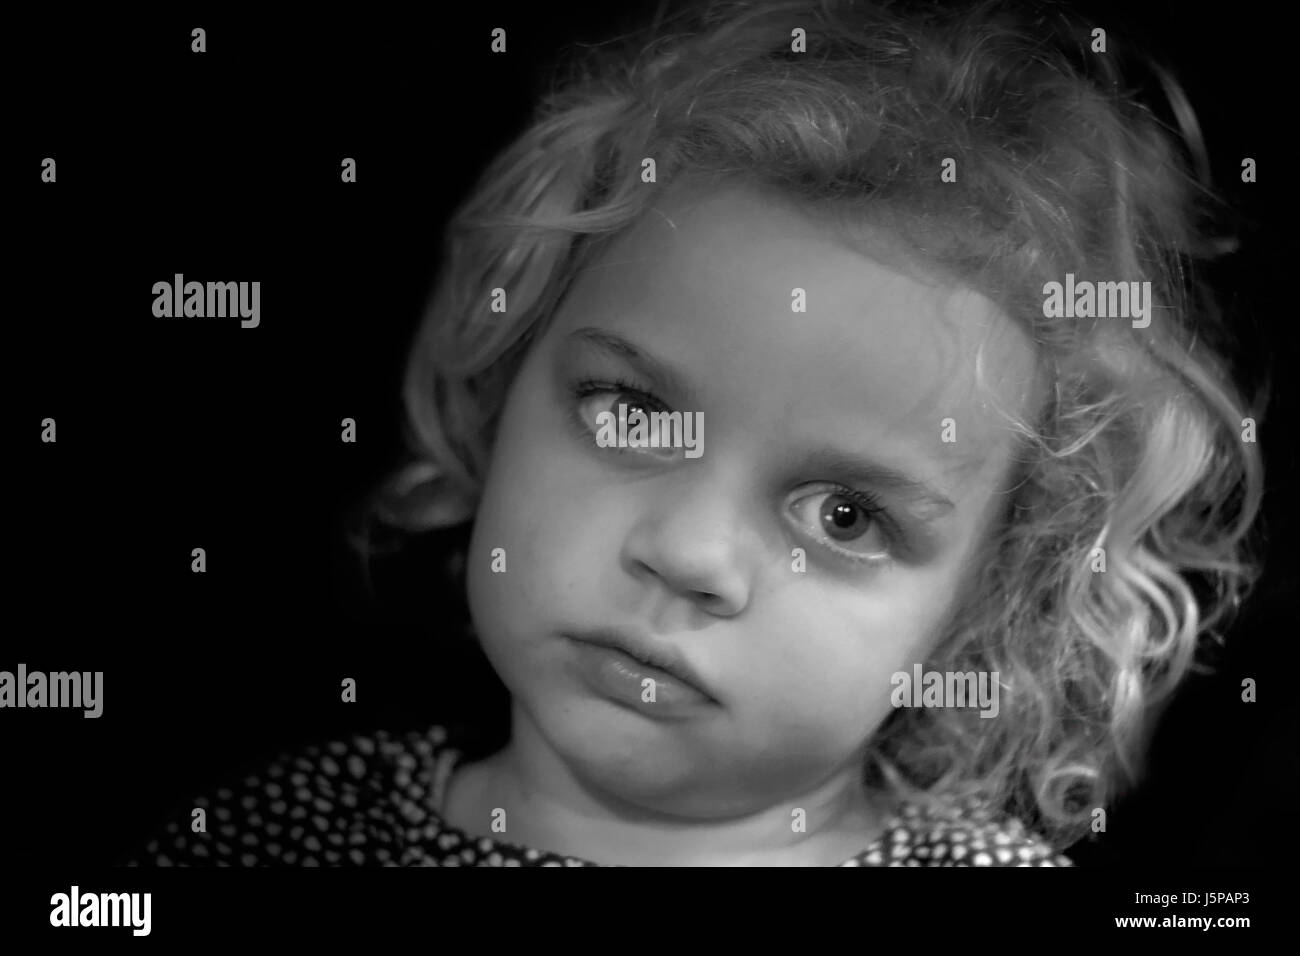 Ritratto bw occhi peli monocromatico da sogno bambini ritratto unkempt bambino la pettinatura Foto Stock